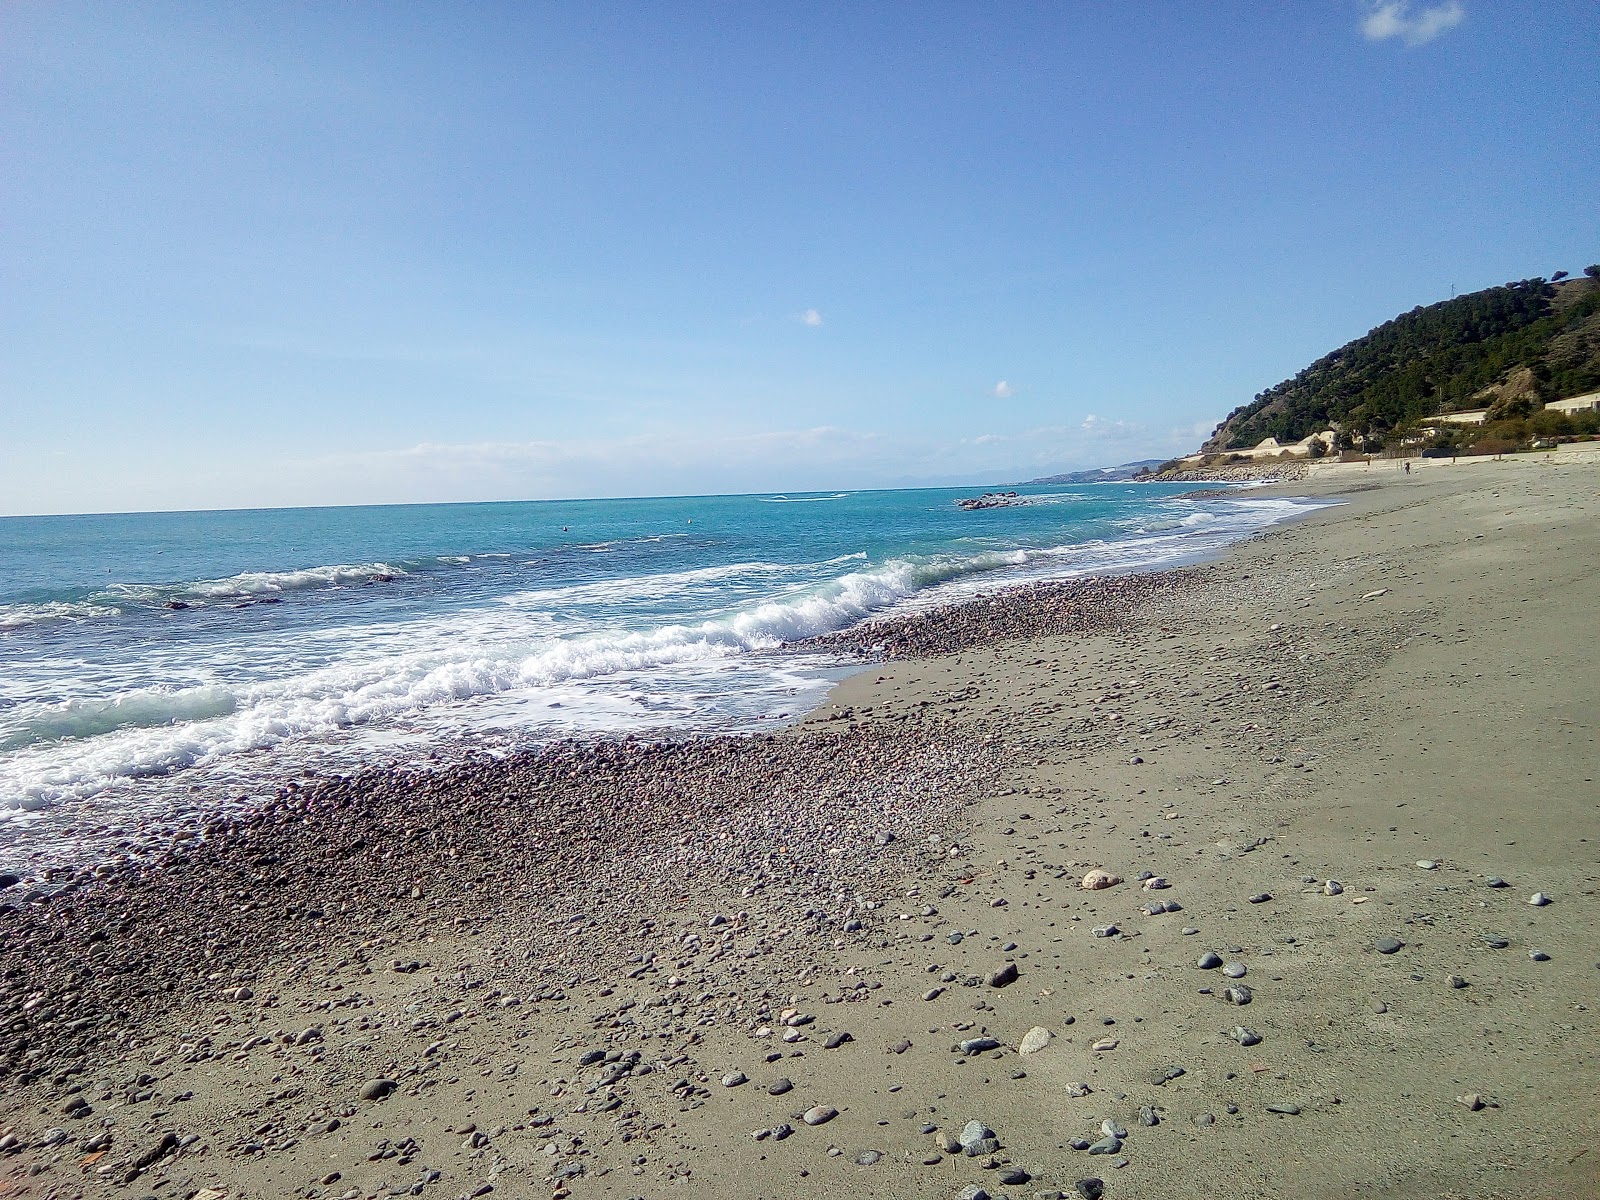 Ultima Spiaggia'in fotoğrafı gri kum yüzey ile